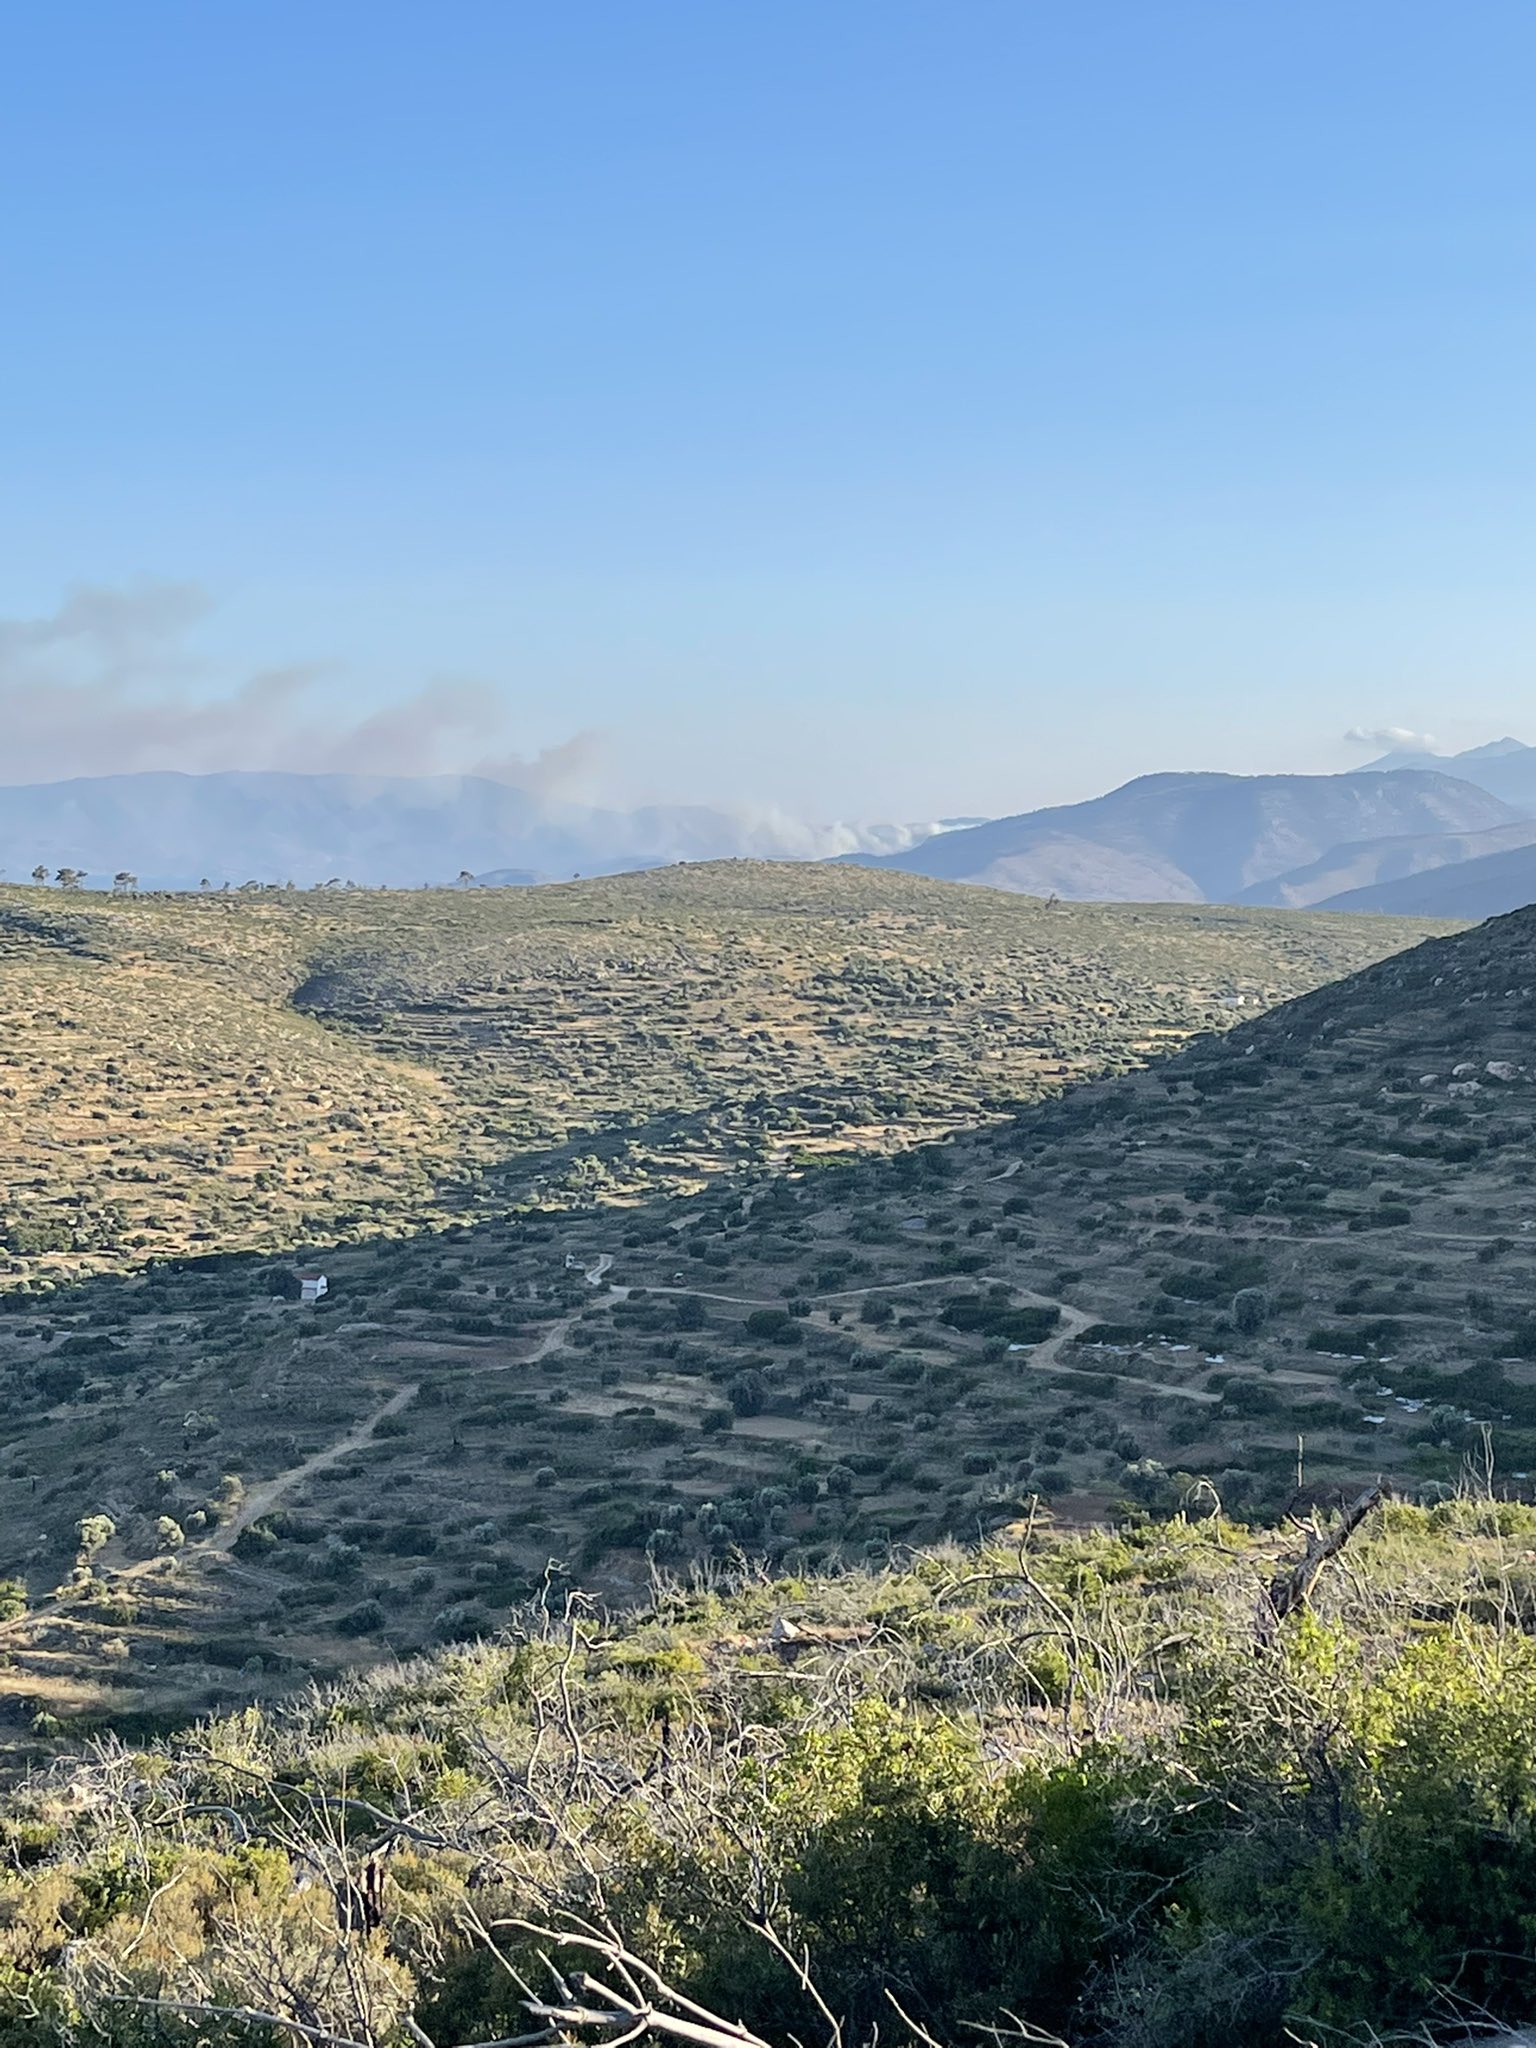 Πυρκαγιά σε δασική έκταση στην περιοχή Κατάβαση Χίου - Εκκενώθηκε το χωριό